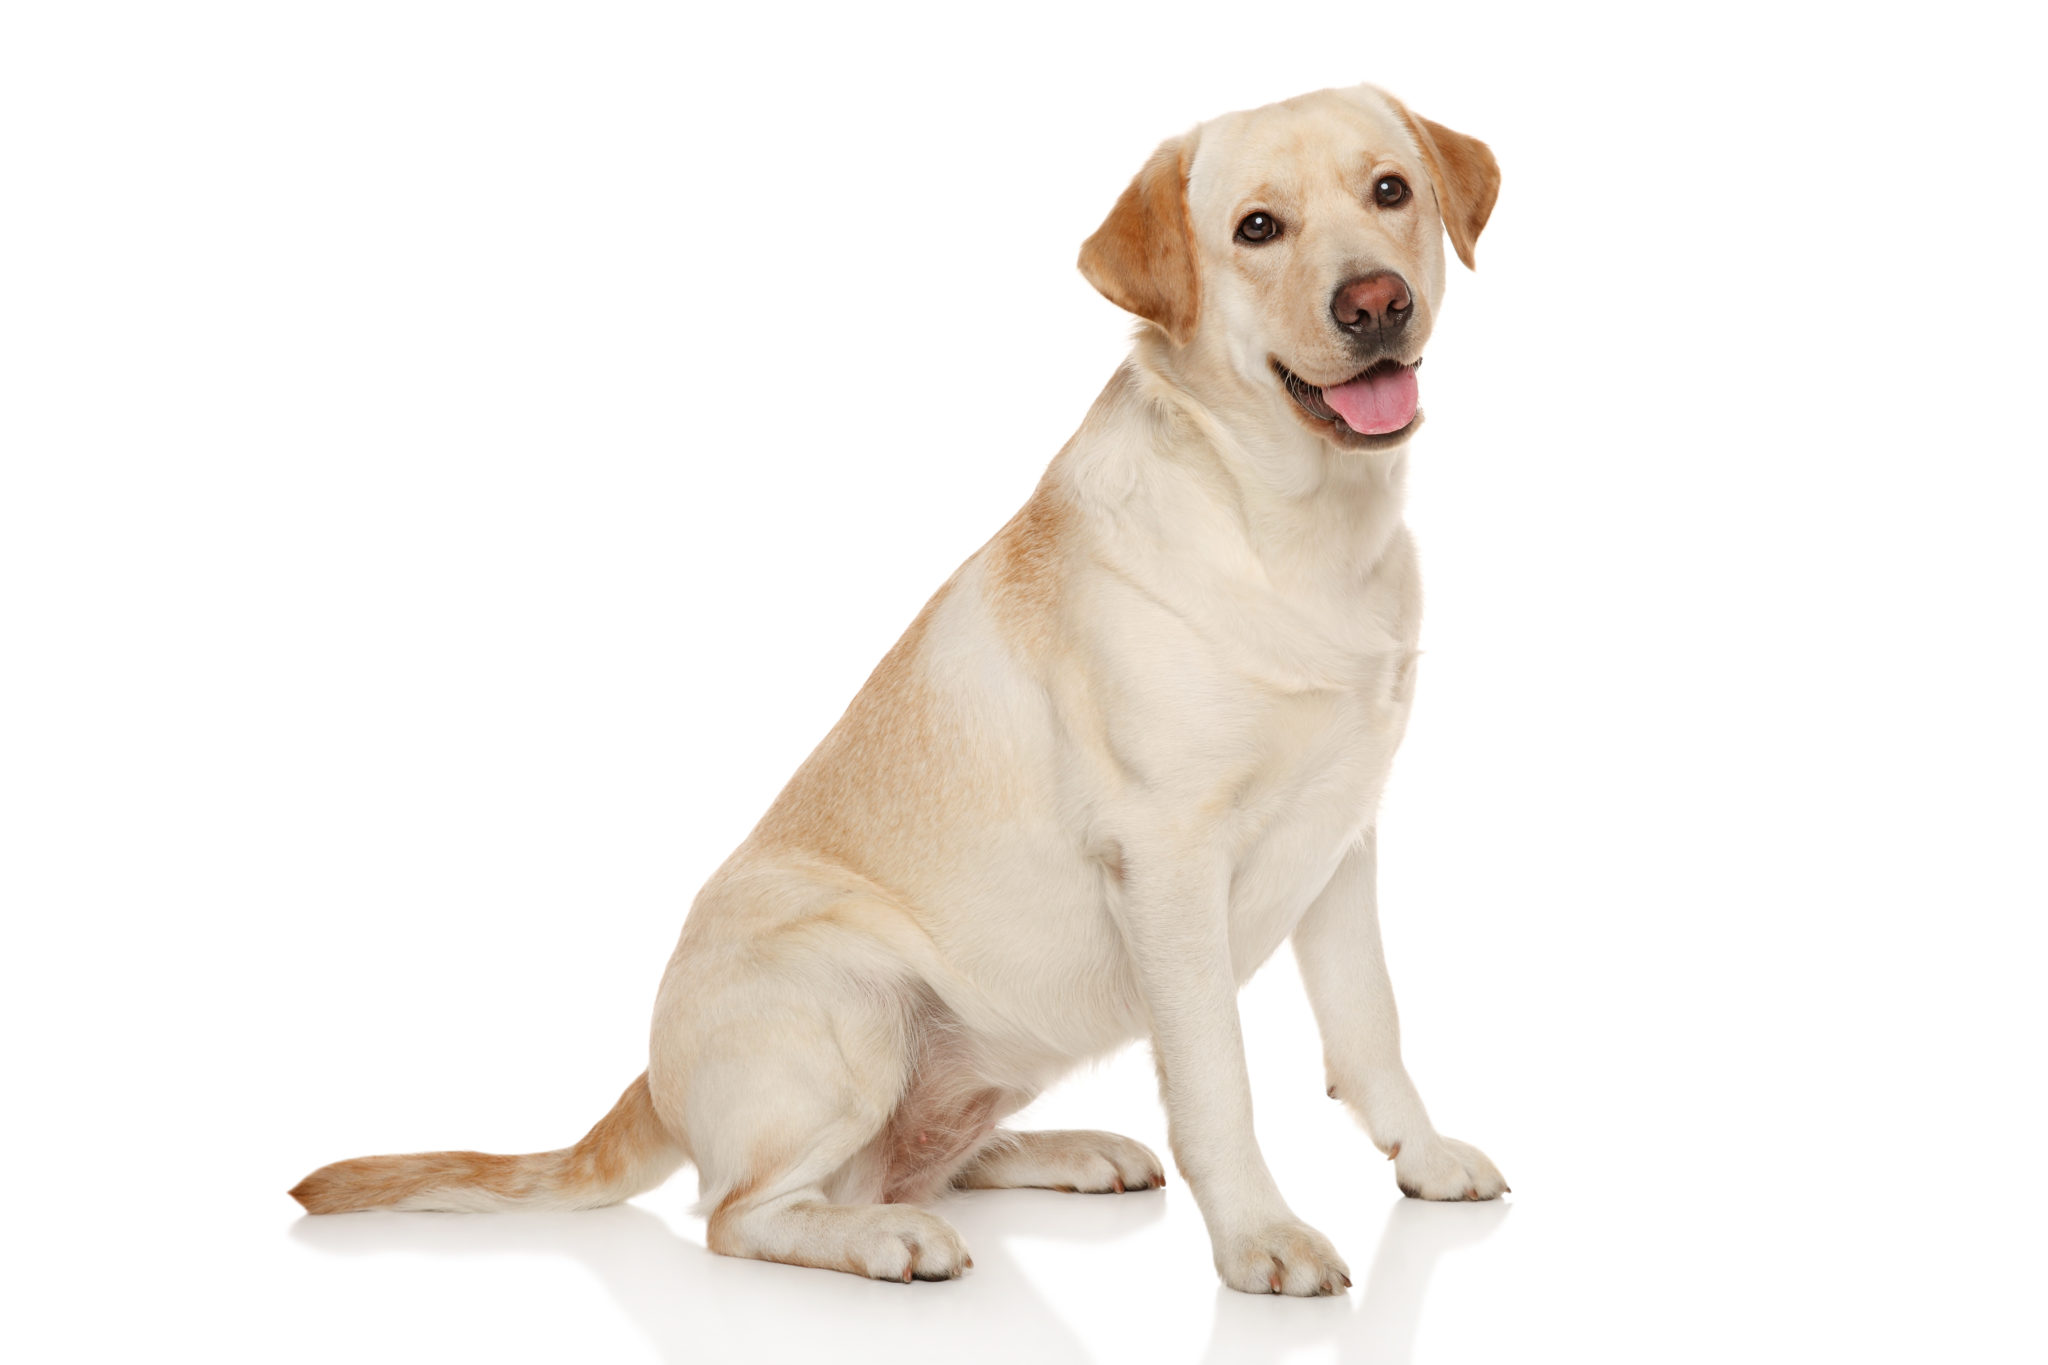 Strre hundar drabbas ofta av artroser i hften. Ultraljudet kan lindra.